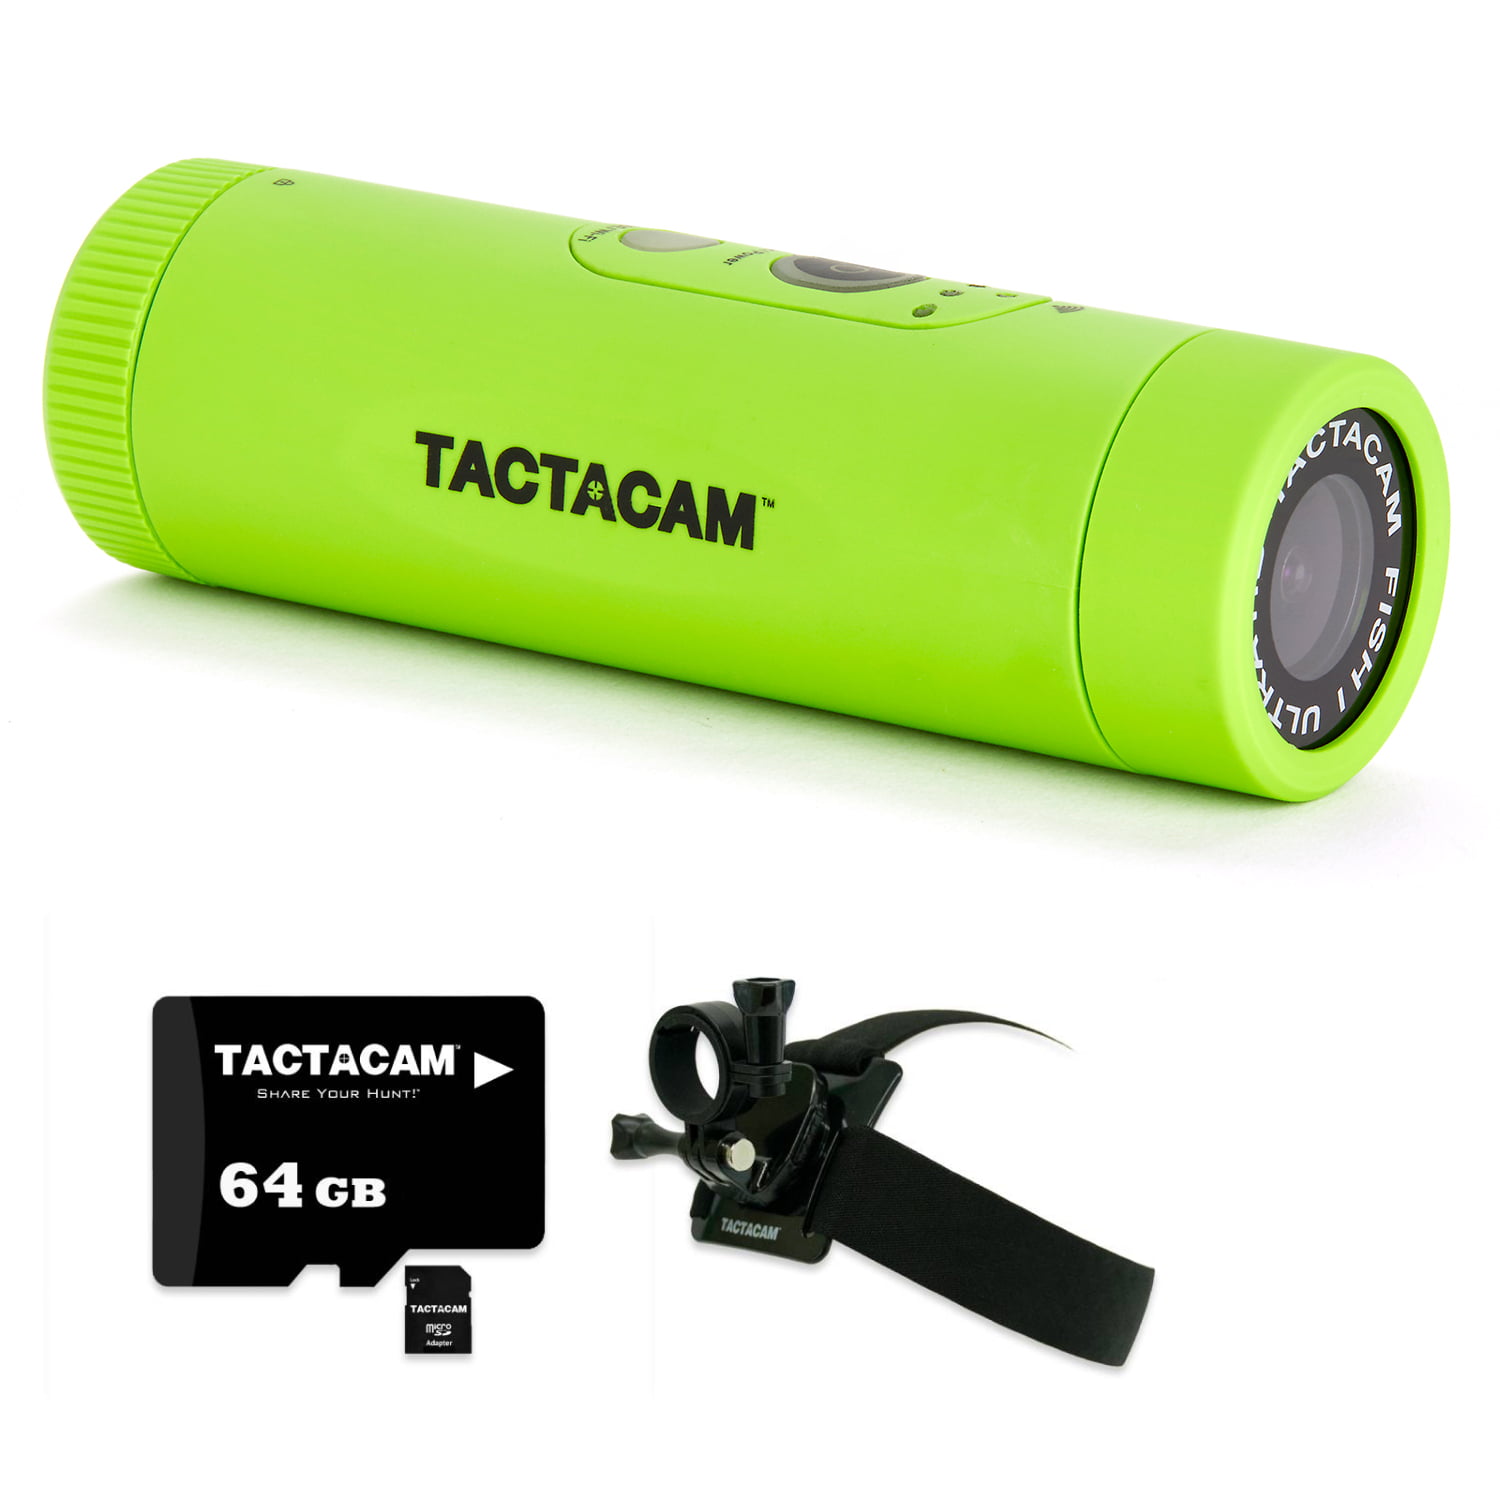 2019 Tactacam Remote Control for 5.0 Units for sale online 